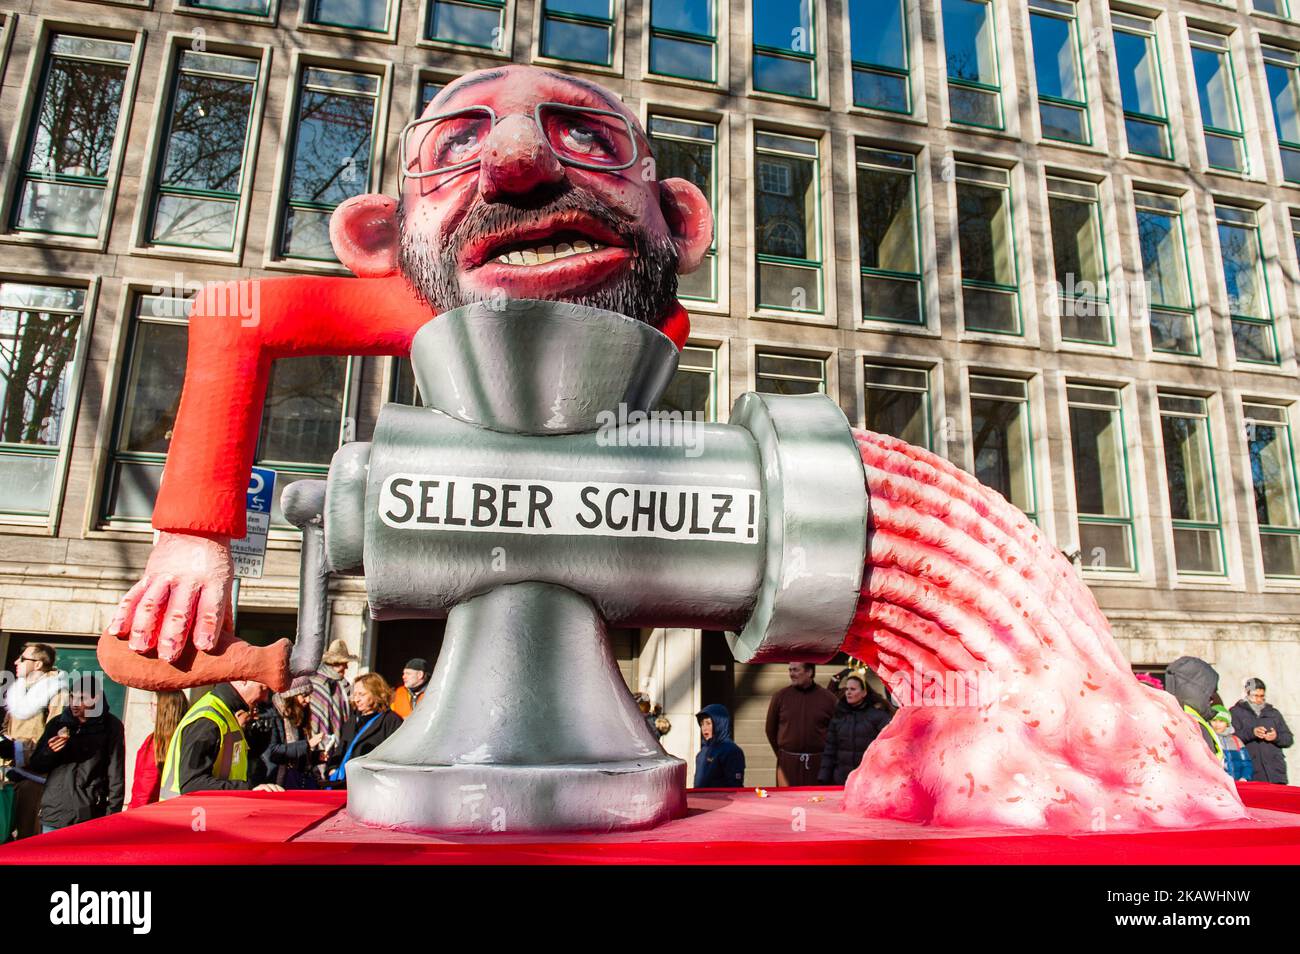 Ein Festwagen mit Martin Schulz ist vor der jährlichen Rose Monday Parade am 12. Februar 2018 in Düsseldorf zu sehen. Die politische Satire ist ein traditioneller Eckpfeiler der jährlichen Paraden. Mehr als 30 Musikensembles und 5.000 Teilnehmer nehmen an der Prozession durch die Stadt Teil. Aufwendig gebaute und dekorierte Wagen adressieren kulturelle und politische Themen und können satirisch, witzig und sogar kontrovers sein. Die politisch thematisierten Floats des Satirikers Jacques Tilly sind weltweit berühmt. (Foto von Romy Arroyo Fernandez/NurPhoto) Stockfoto